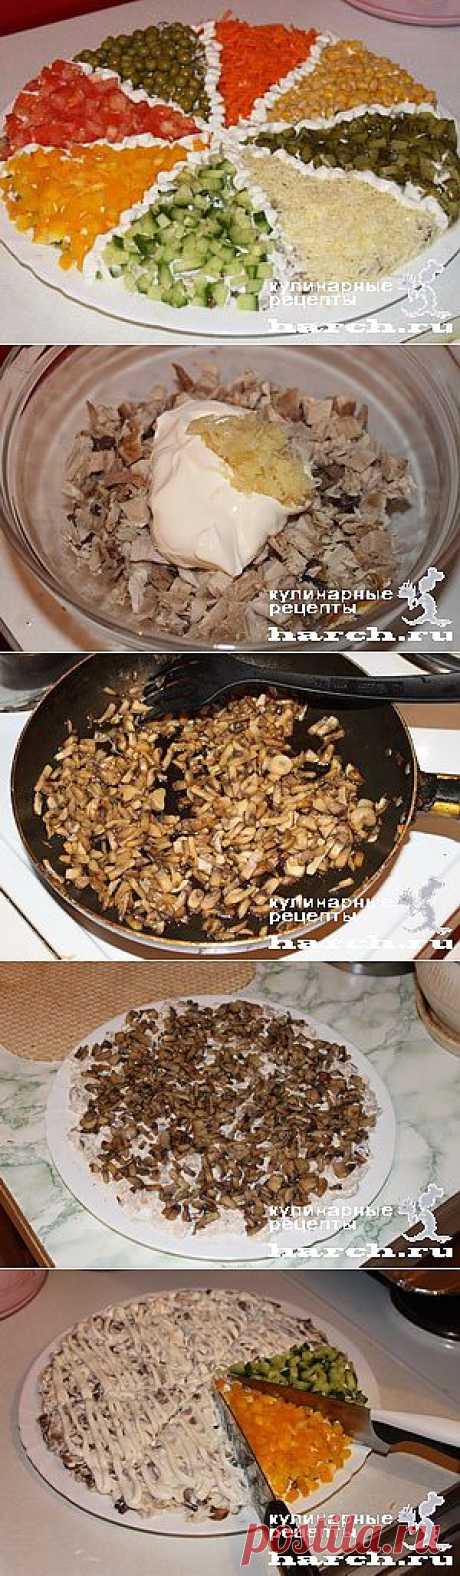 Салат с птицей &amp;#8220;Сектор&amp;#8221;  |  Харч.ру  - рецепты для любителей вкусно поесть